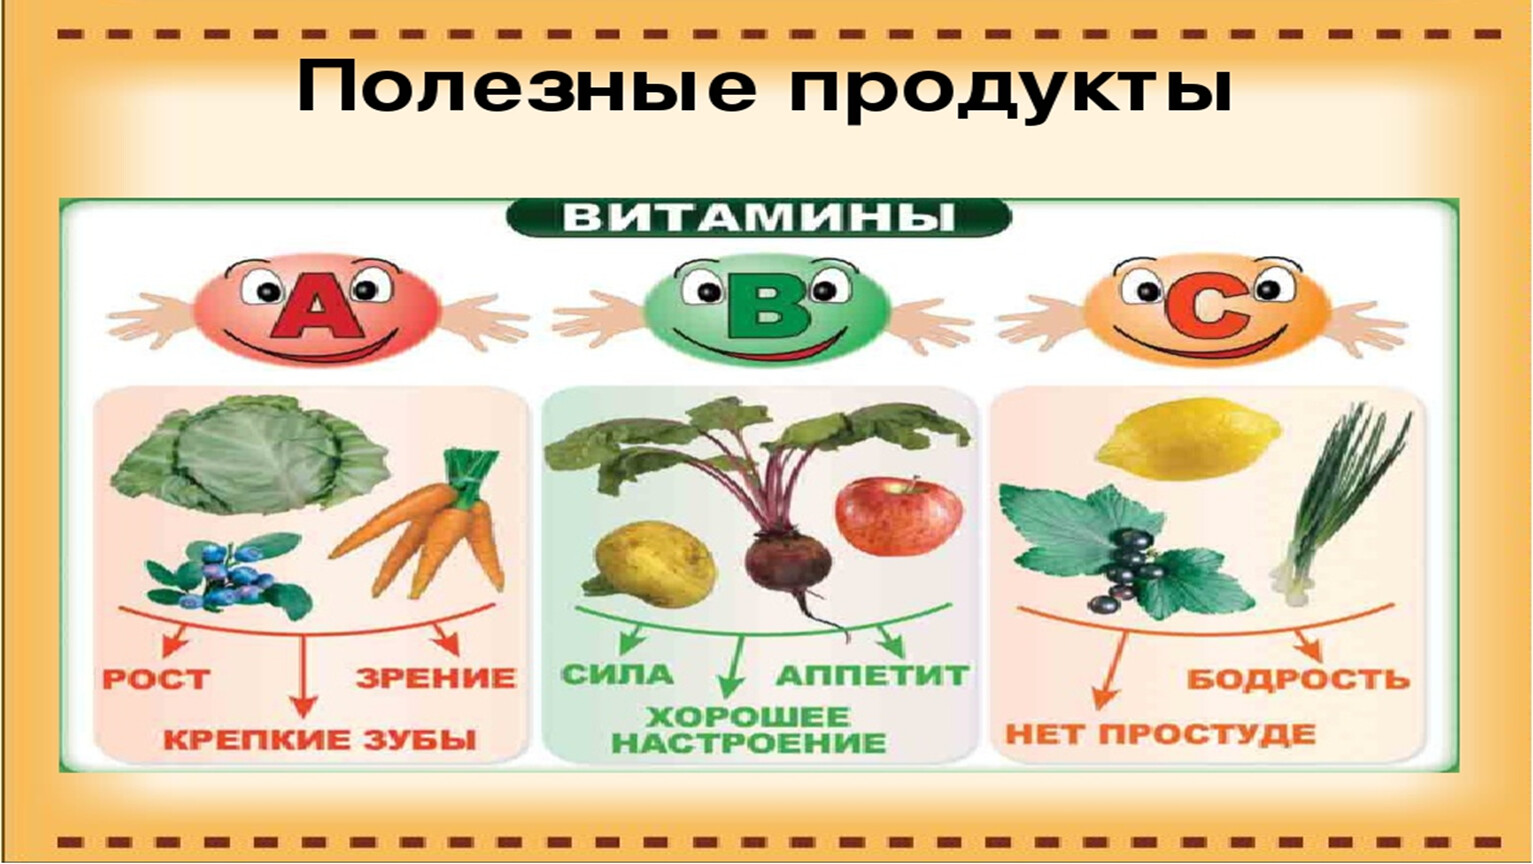 Овощи и фрукты полезные продукты картинки для детей